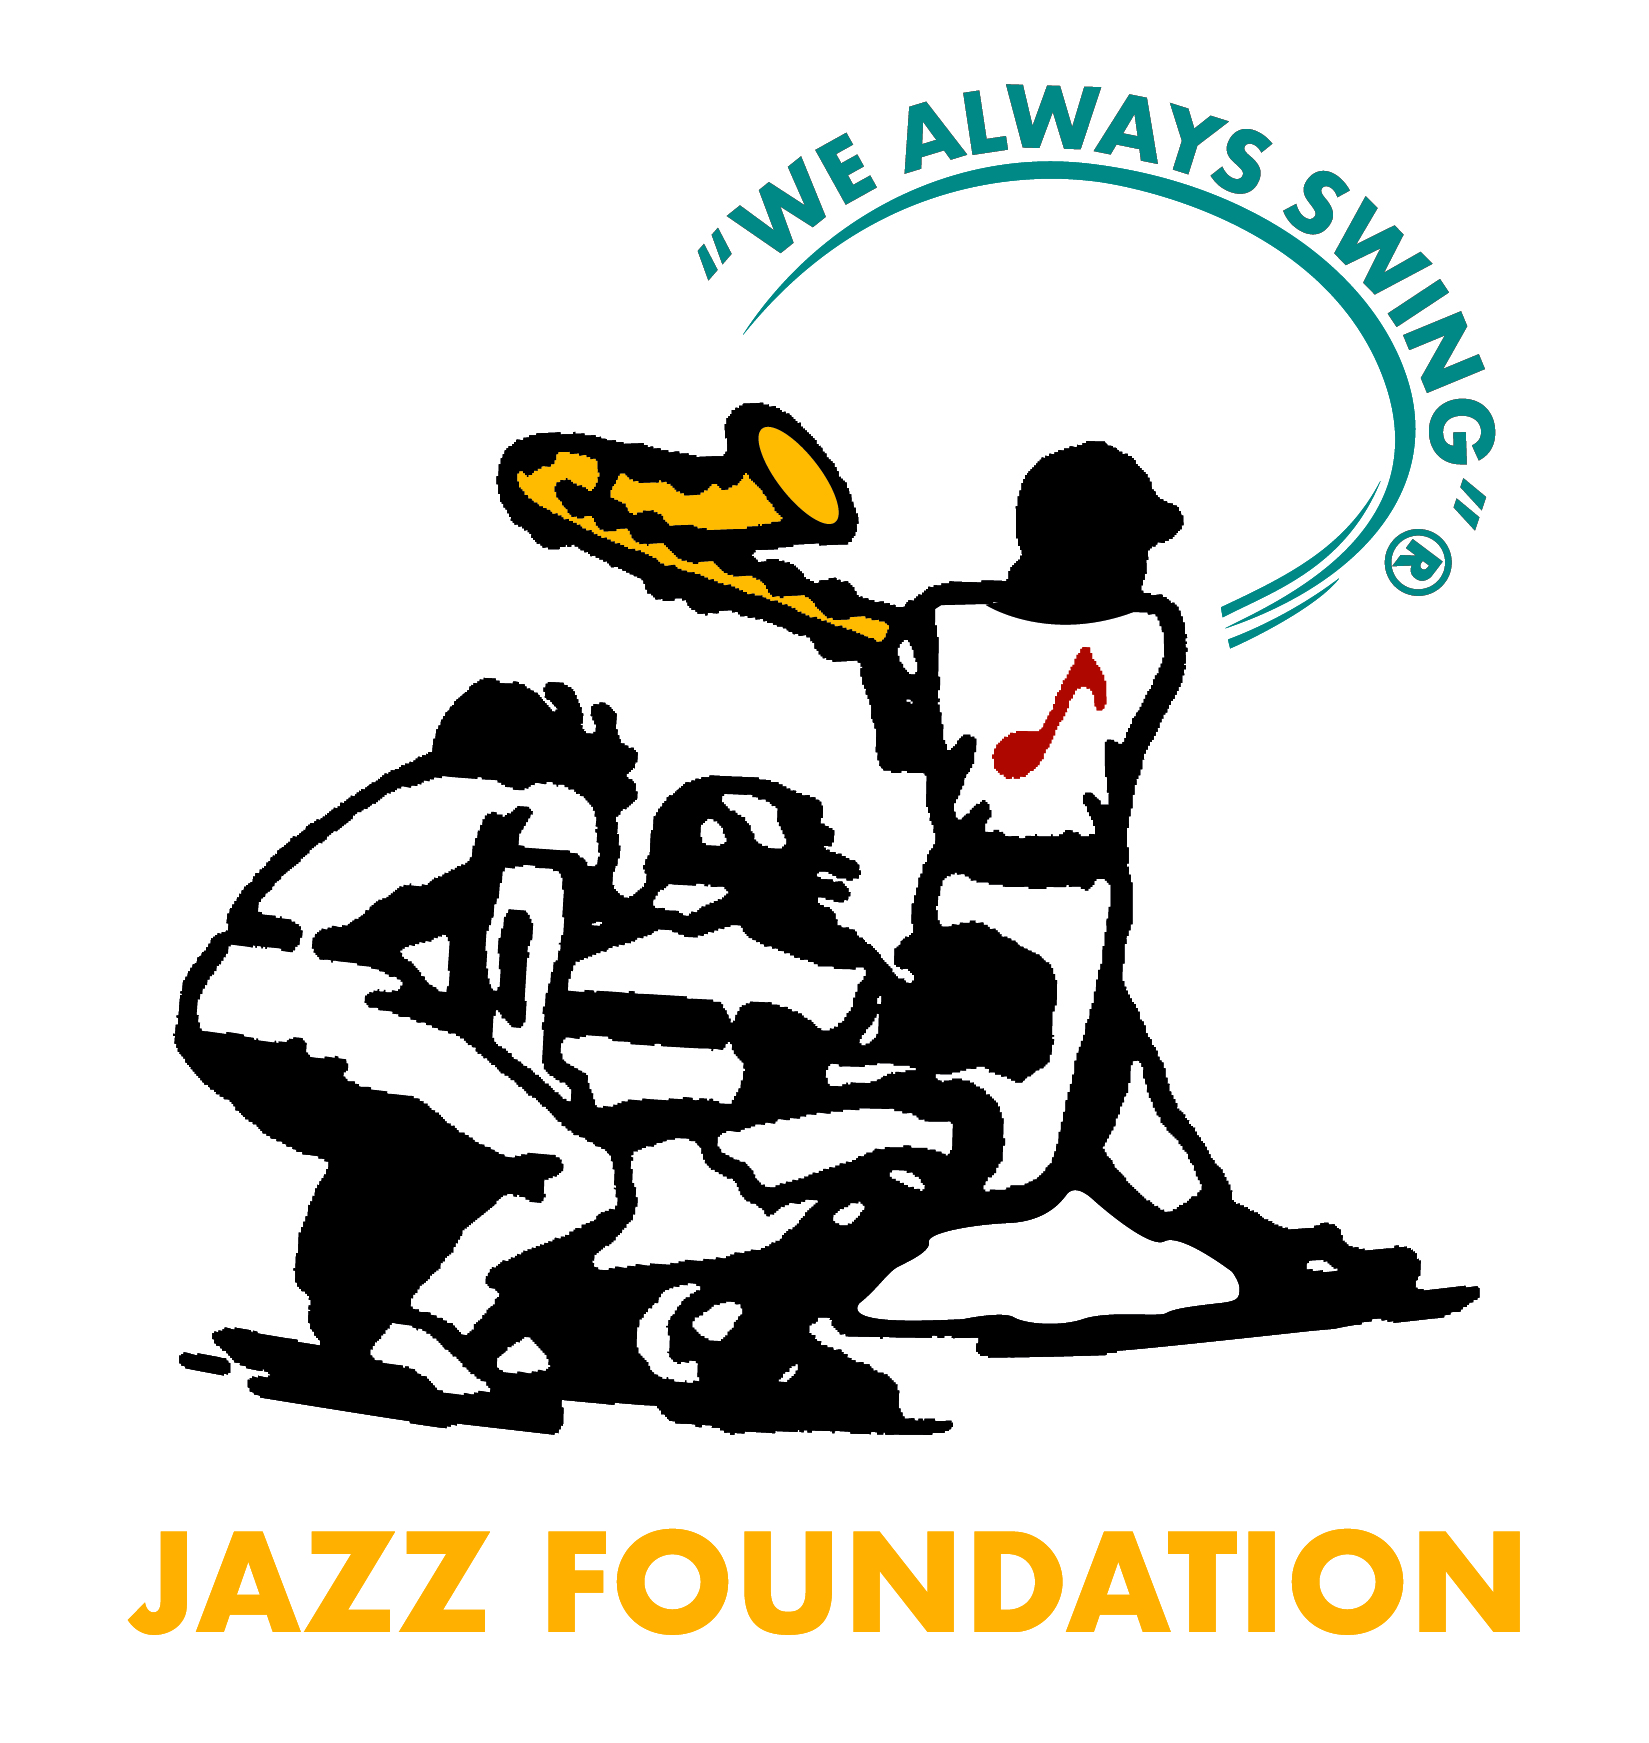 We Always Swing® Jazz Foundation